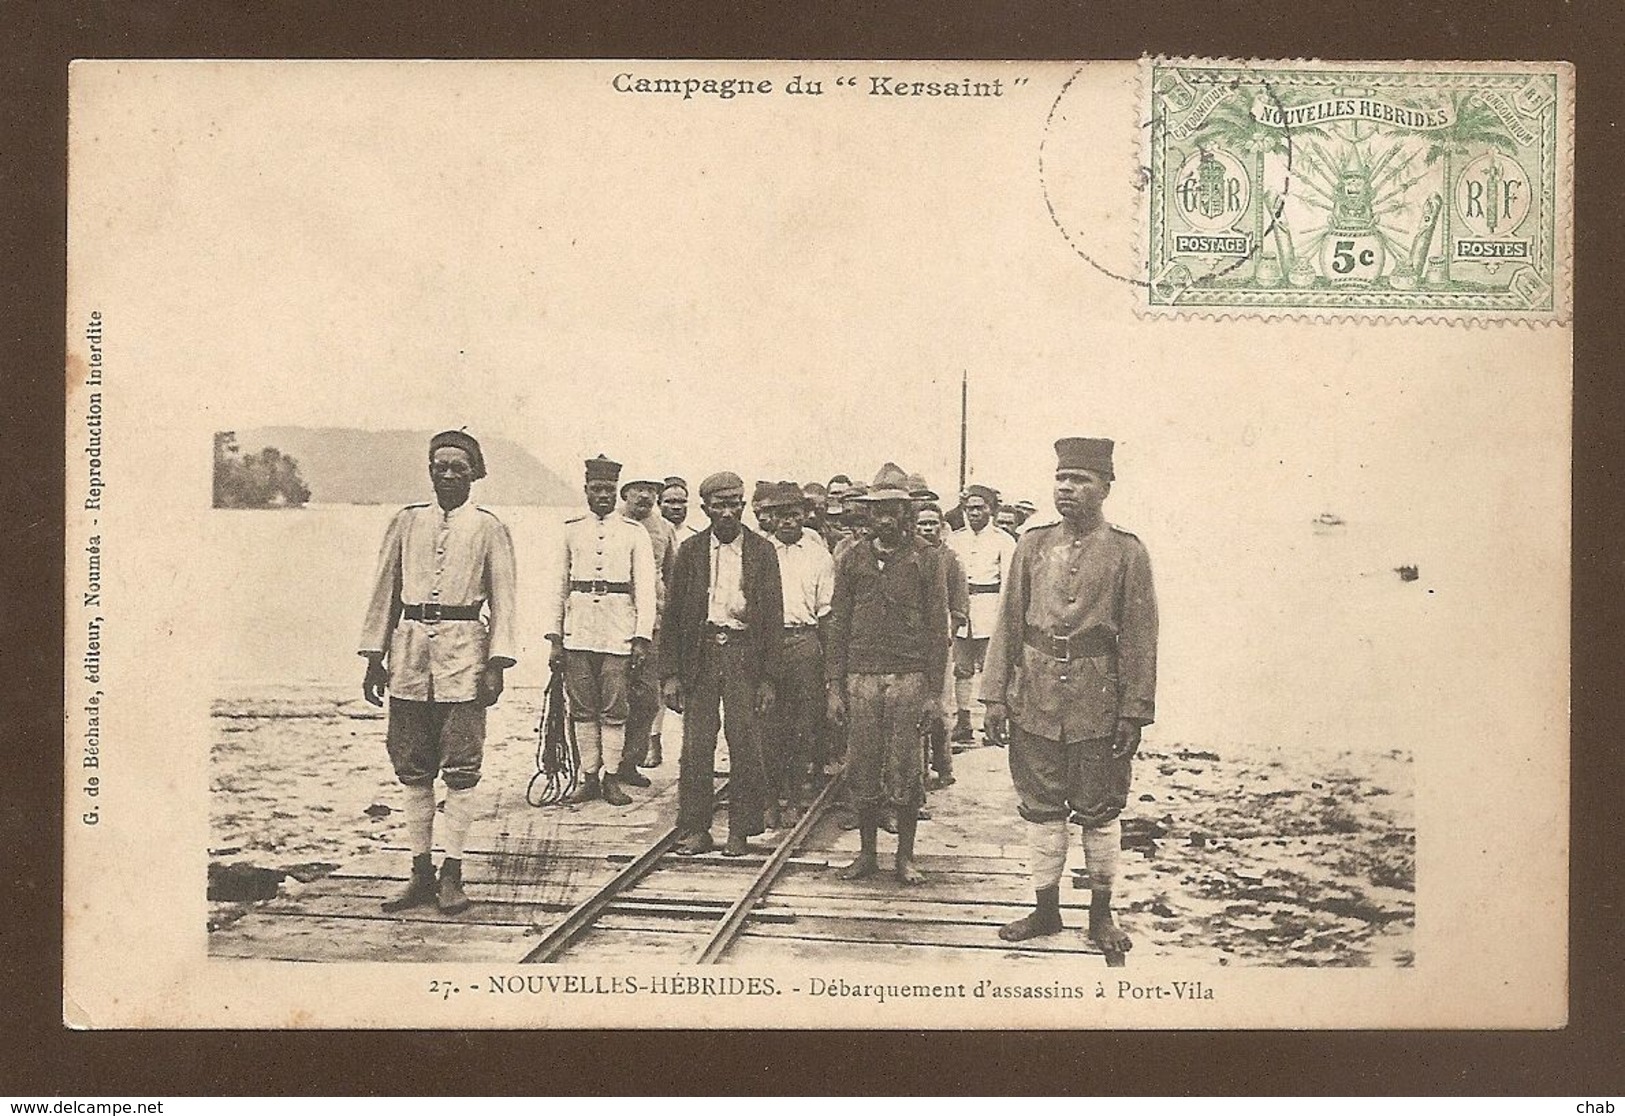 27 - NOUVELLES-HEBRIDES - Débarquement D'assassins à Port-Vila - Campagne Du "Kersaint" - ASSASSIN - MEURTRIER - JUSTICE - Vanuatu